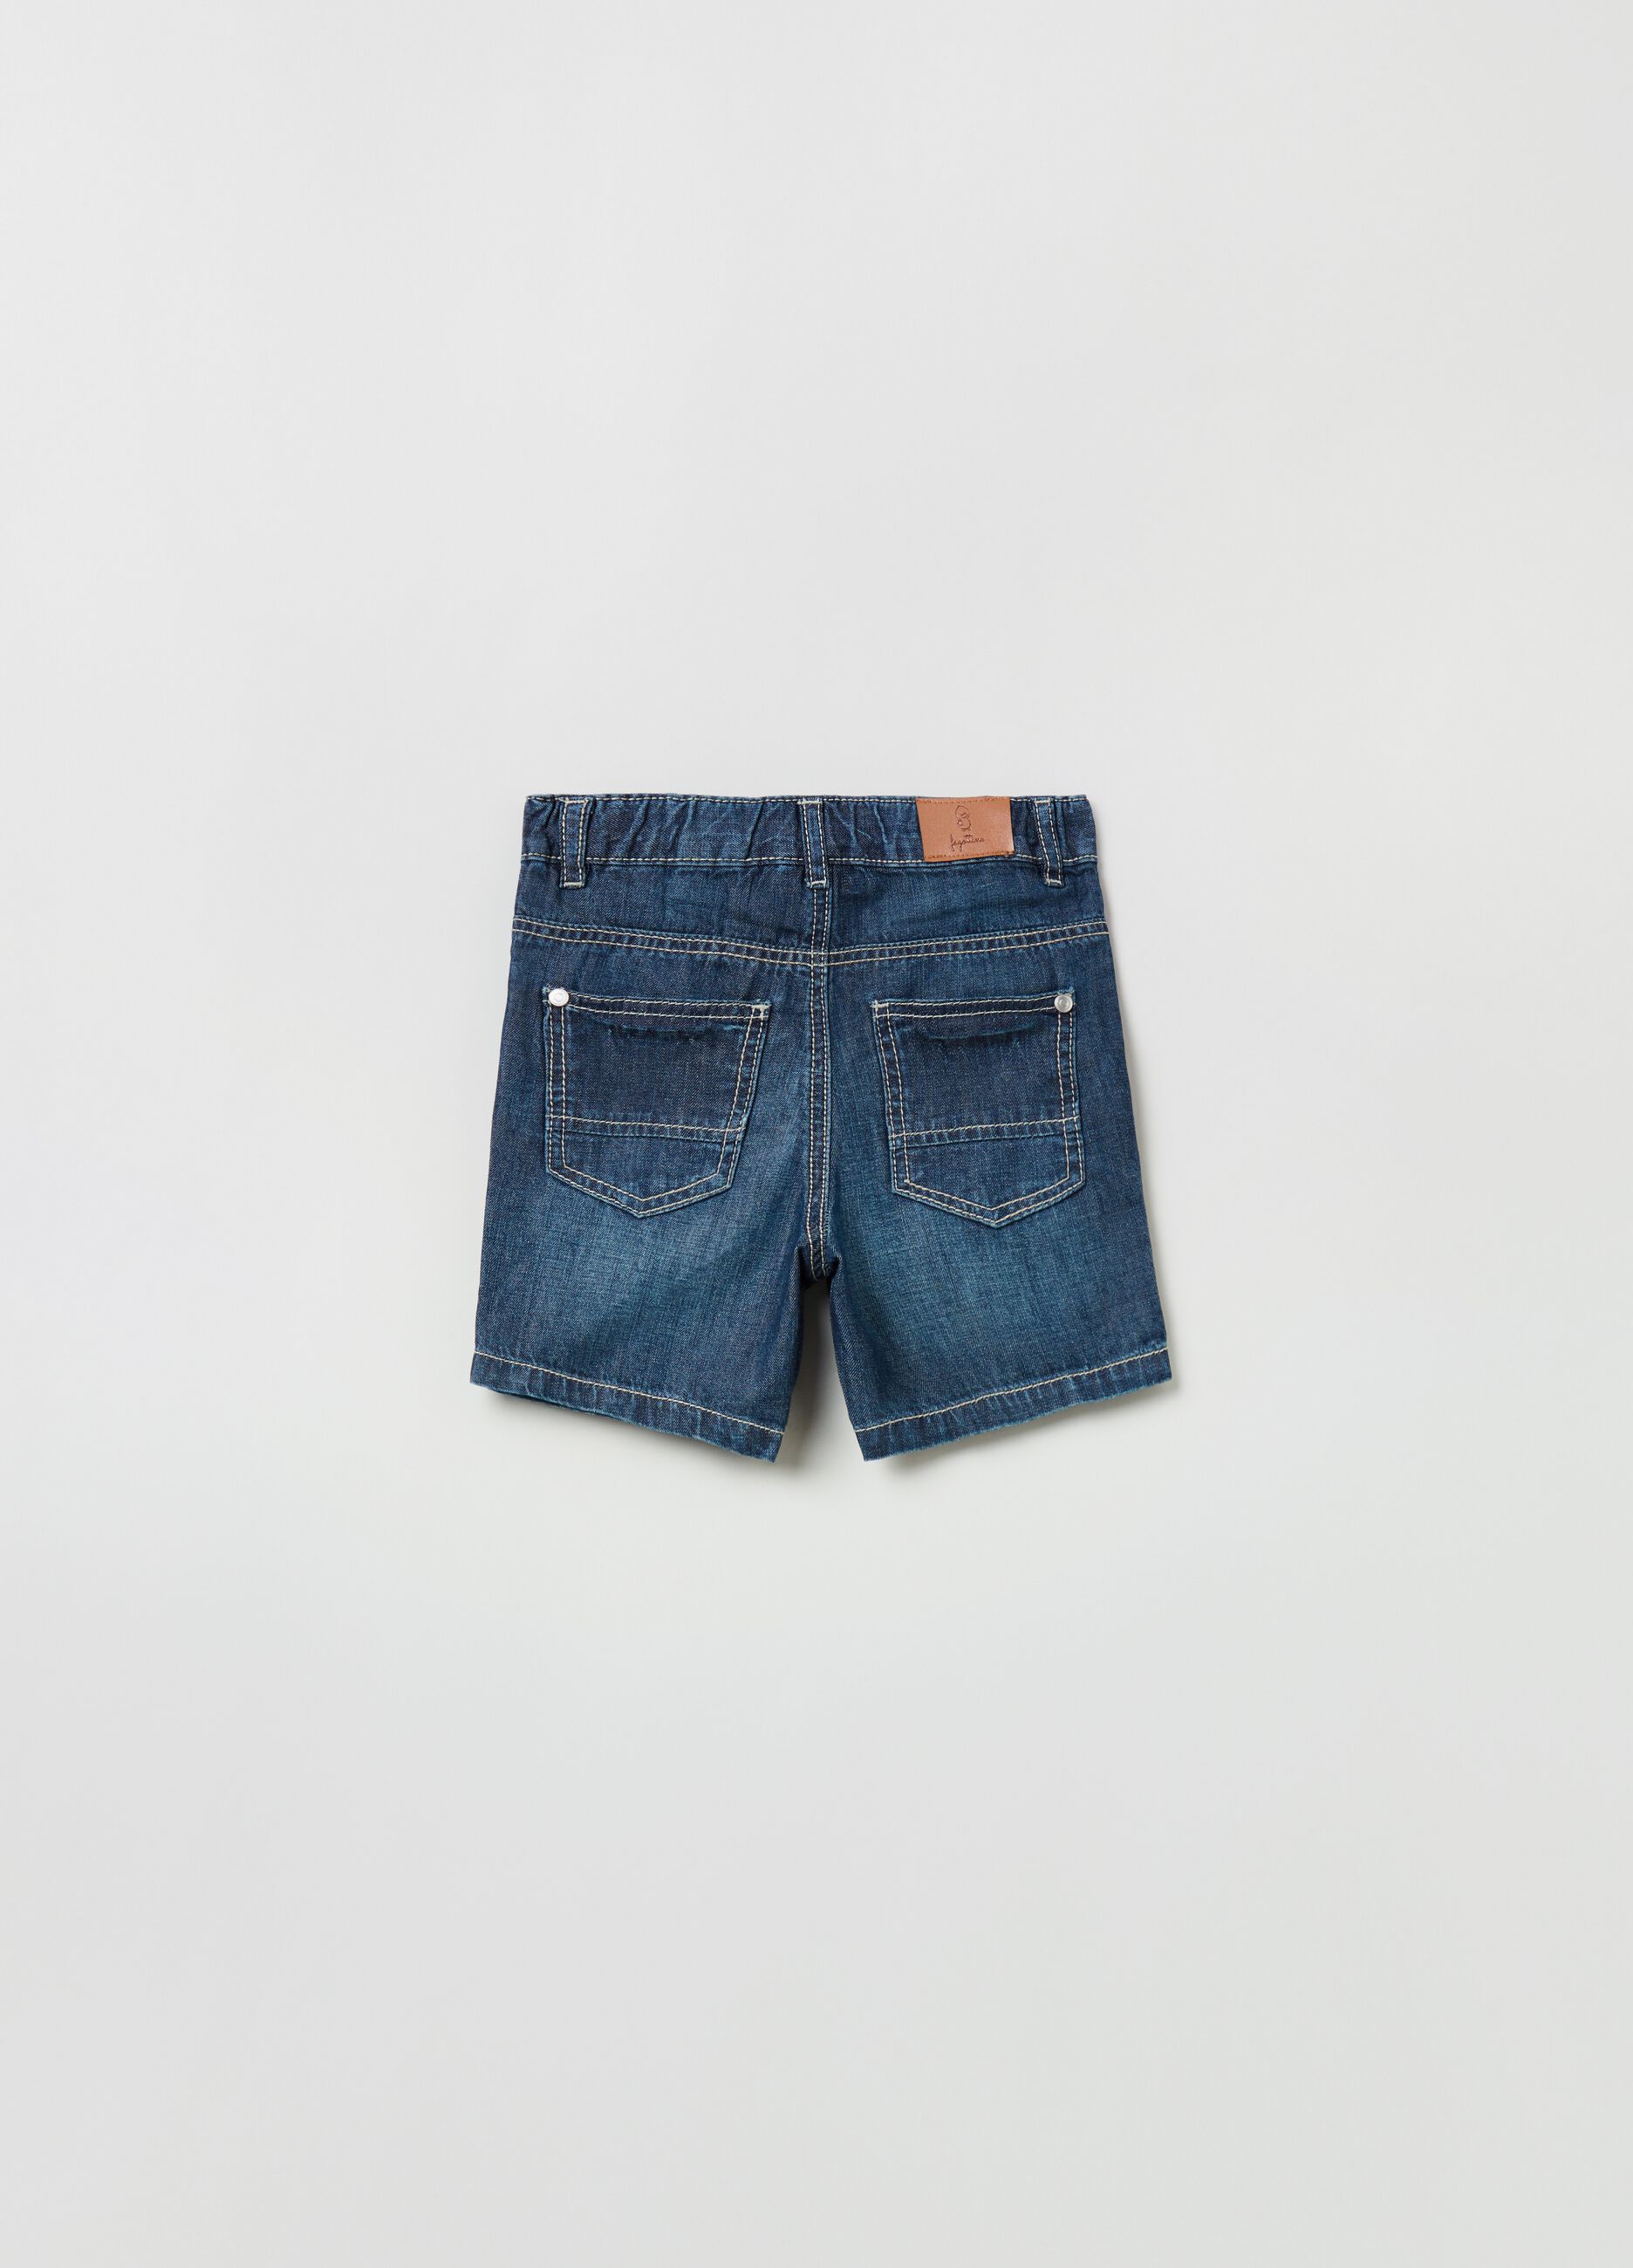 Stonewashed shorts in lightweight denim